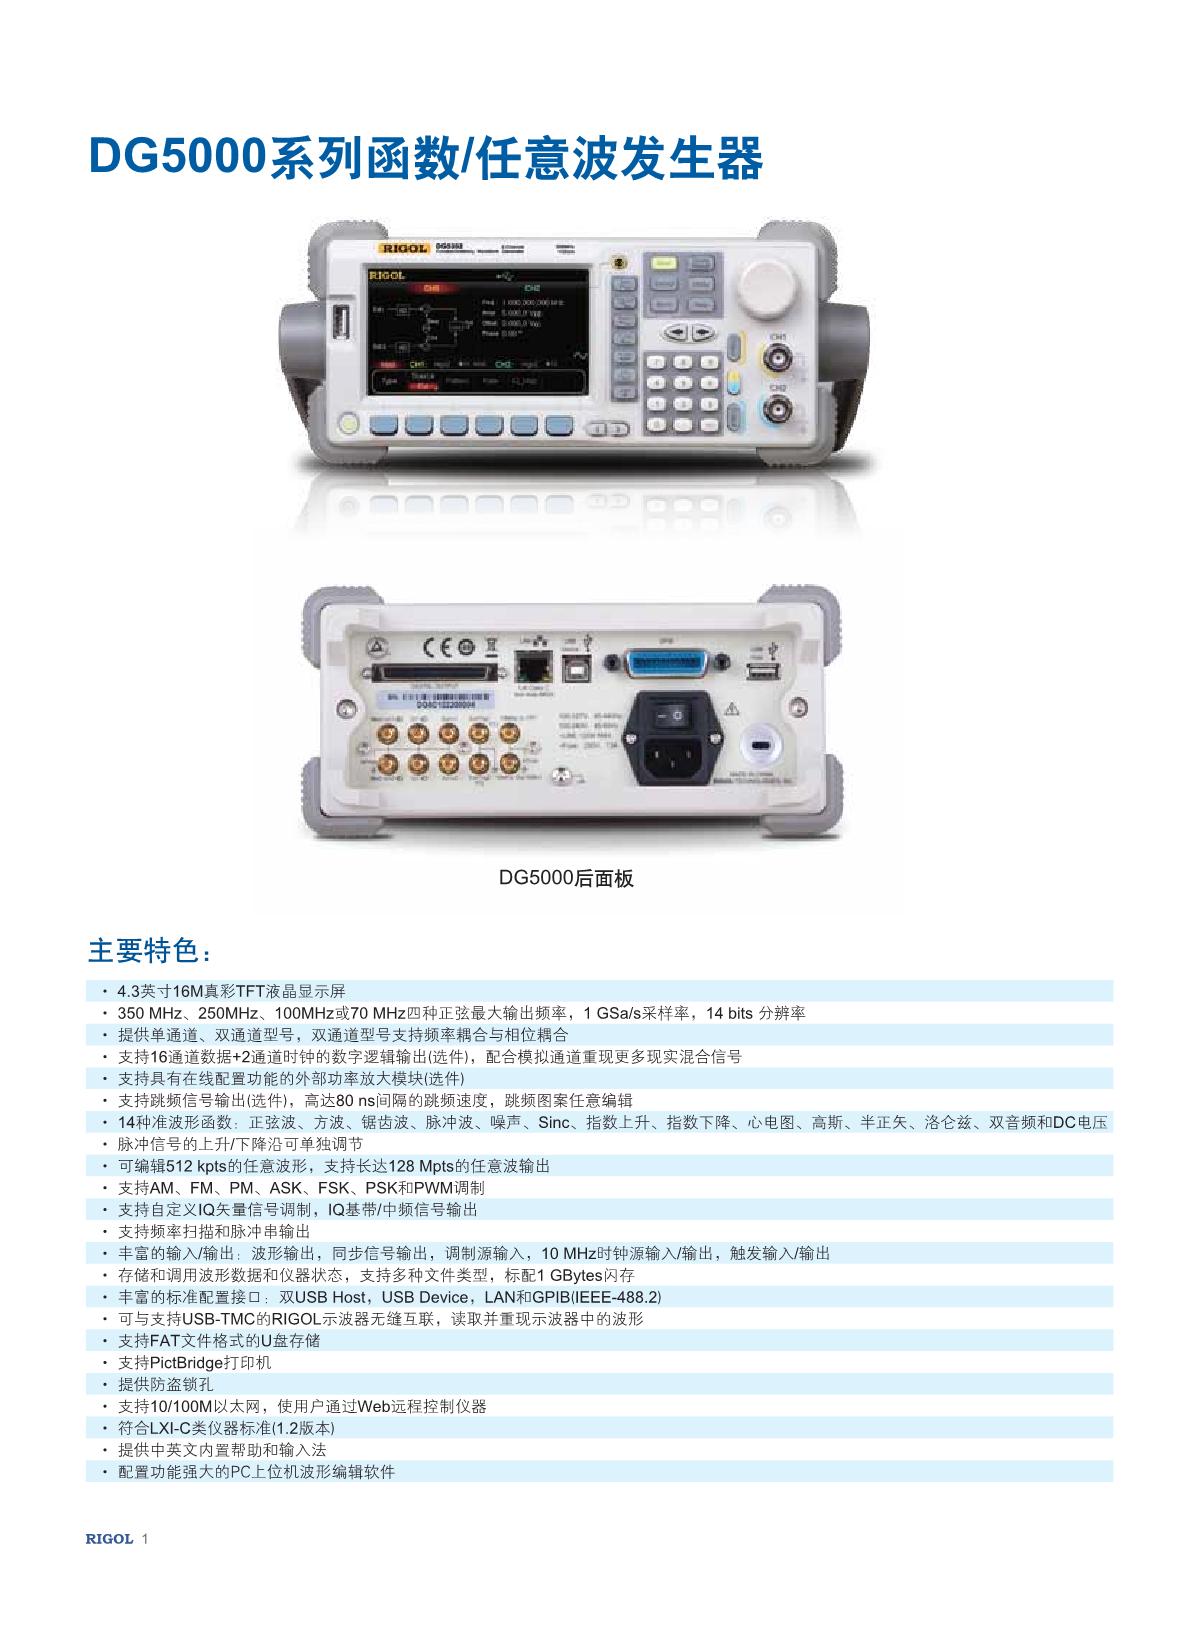 DG5000 DataSheet20151208-CN_2.JPG